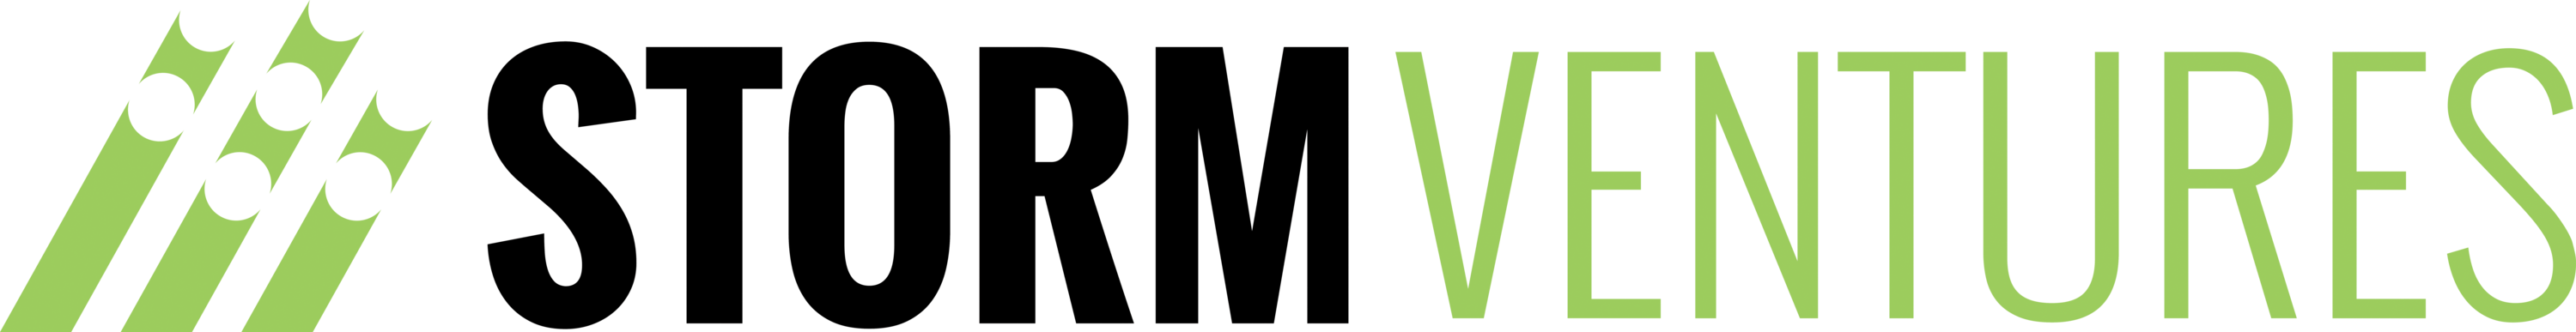 Storm Ventures B2B SaaS VC firm logo